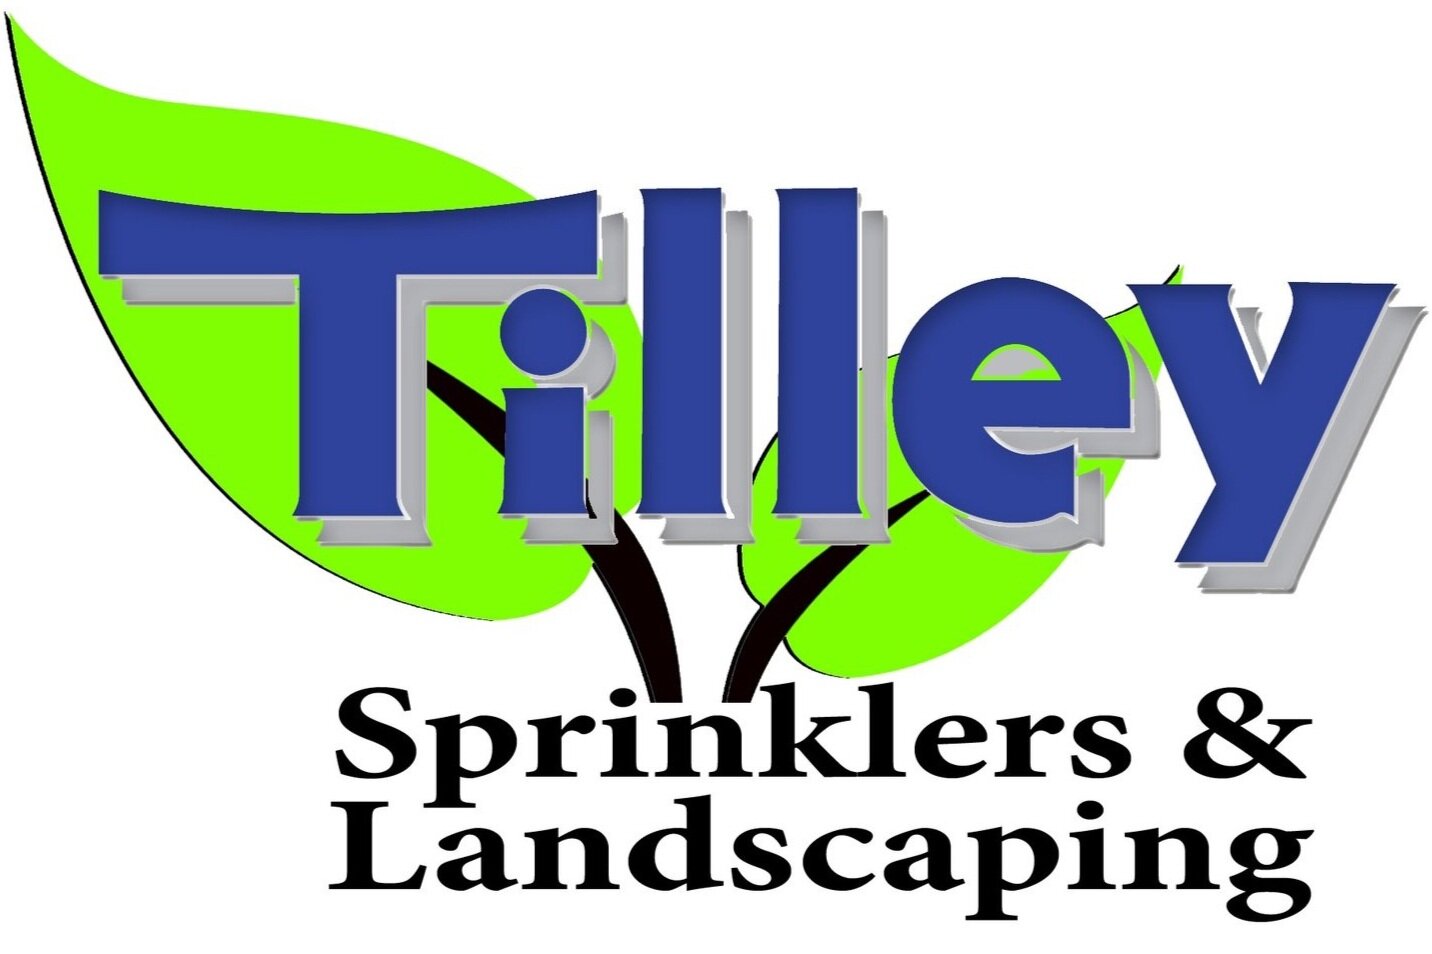 Tilley Sprinkler Systems & Landscaping